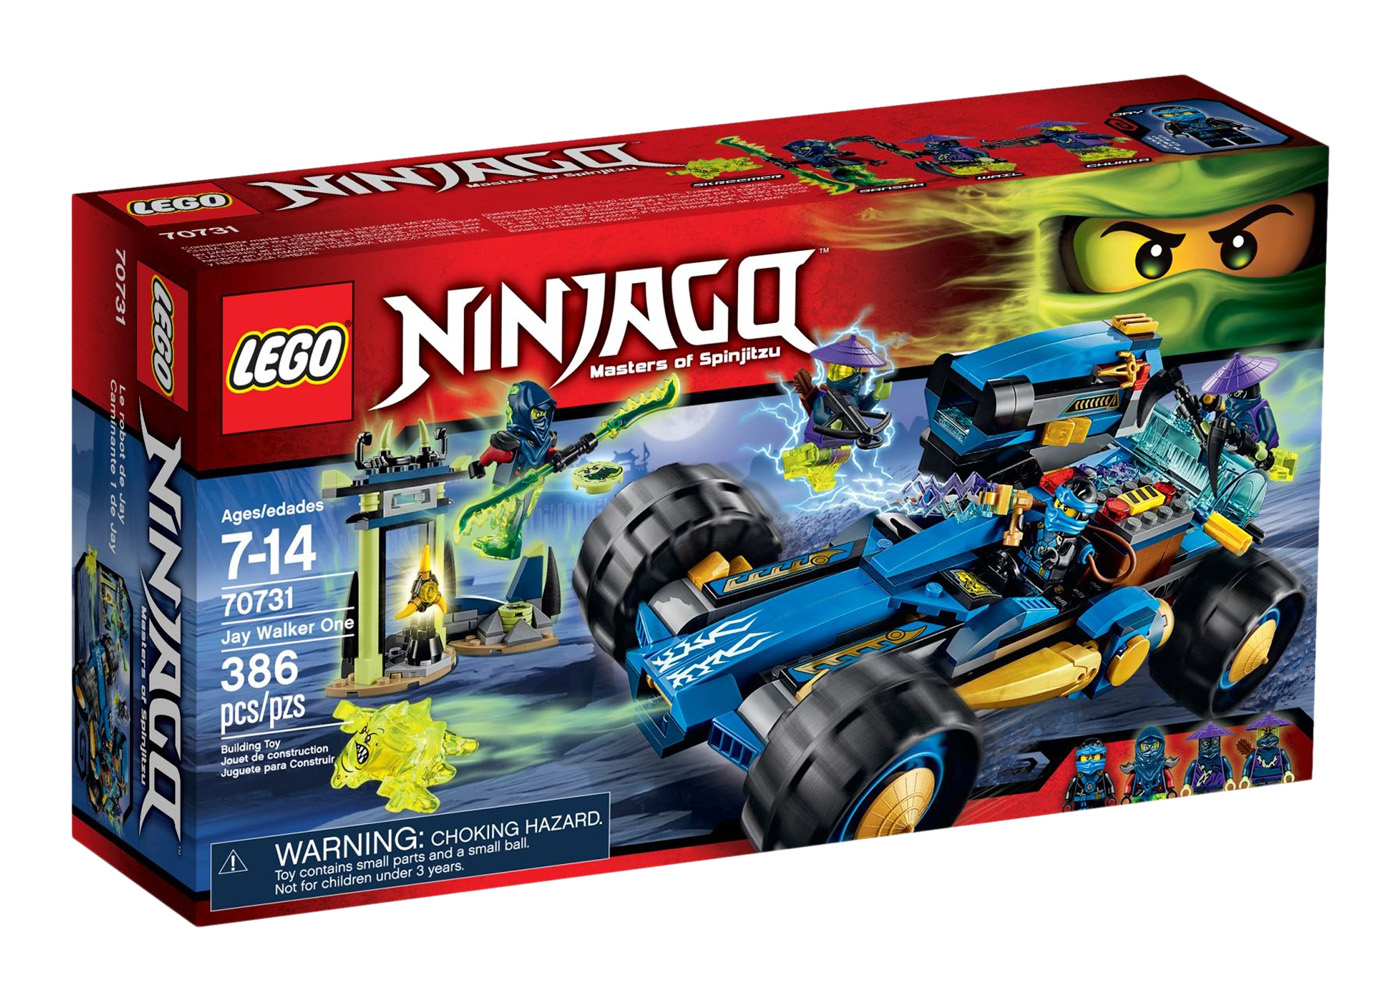 LEGO Ninjago Jay Walker One Set 70731 - GB